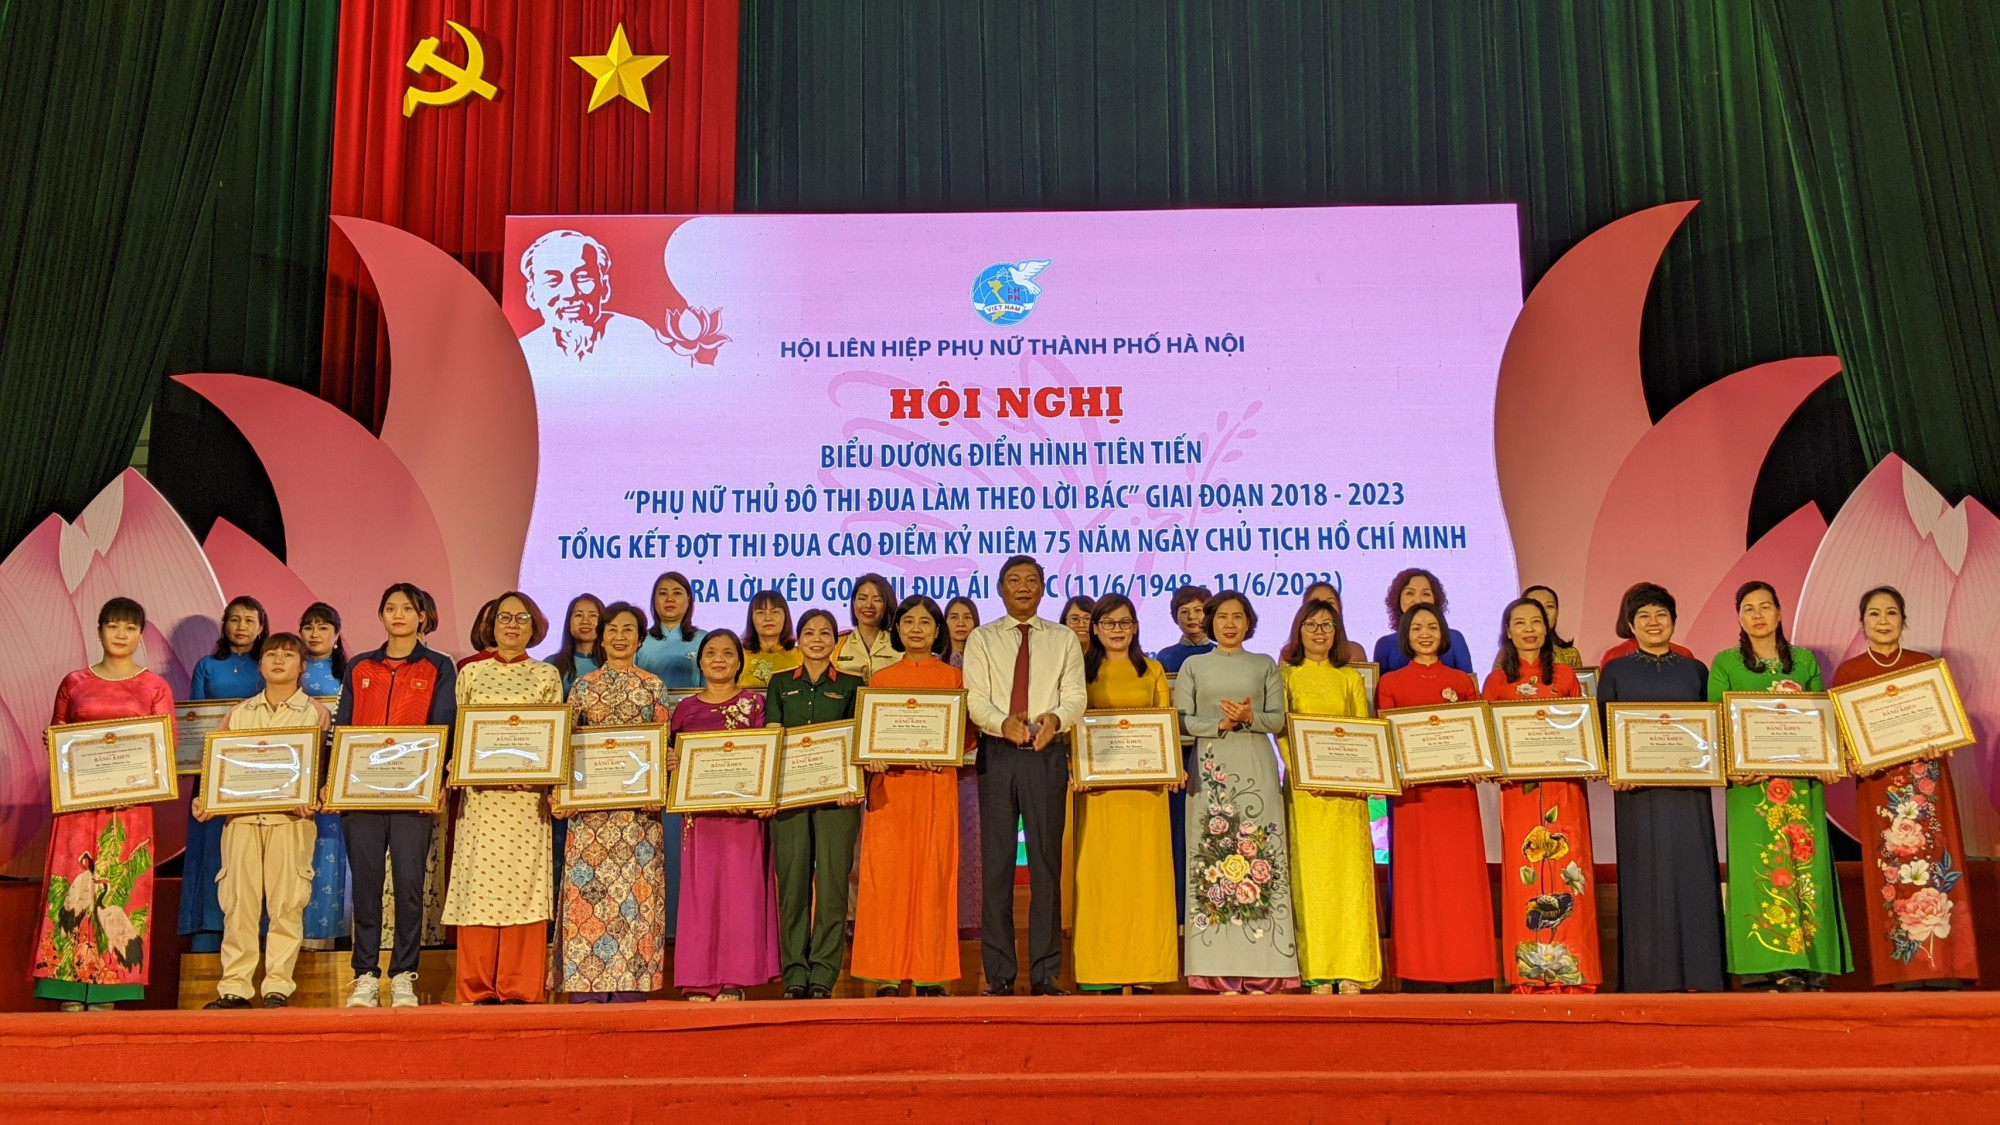 30 tập thể, cá nhân điển hình tiên tiến đã được tôn vinh và nhận khen thưởng của UBND TP Hà Nội.